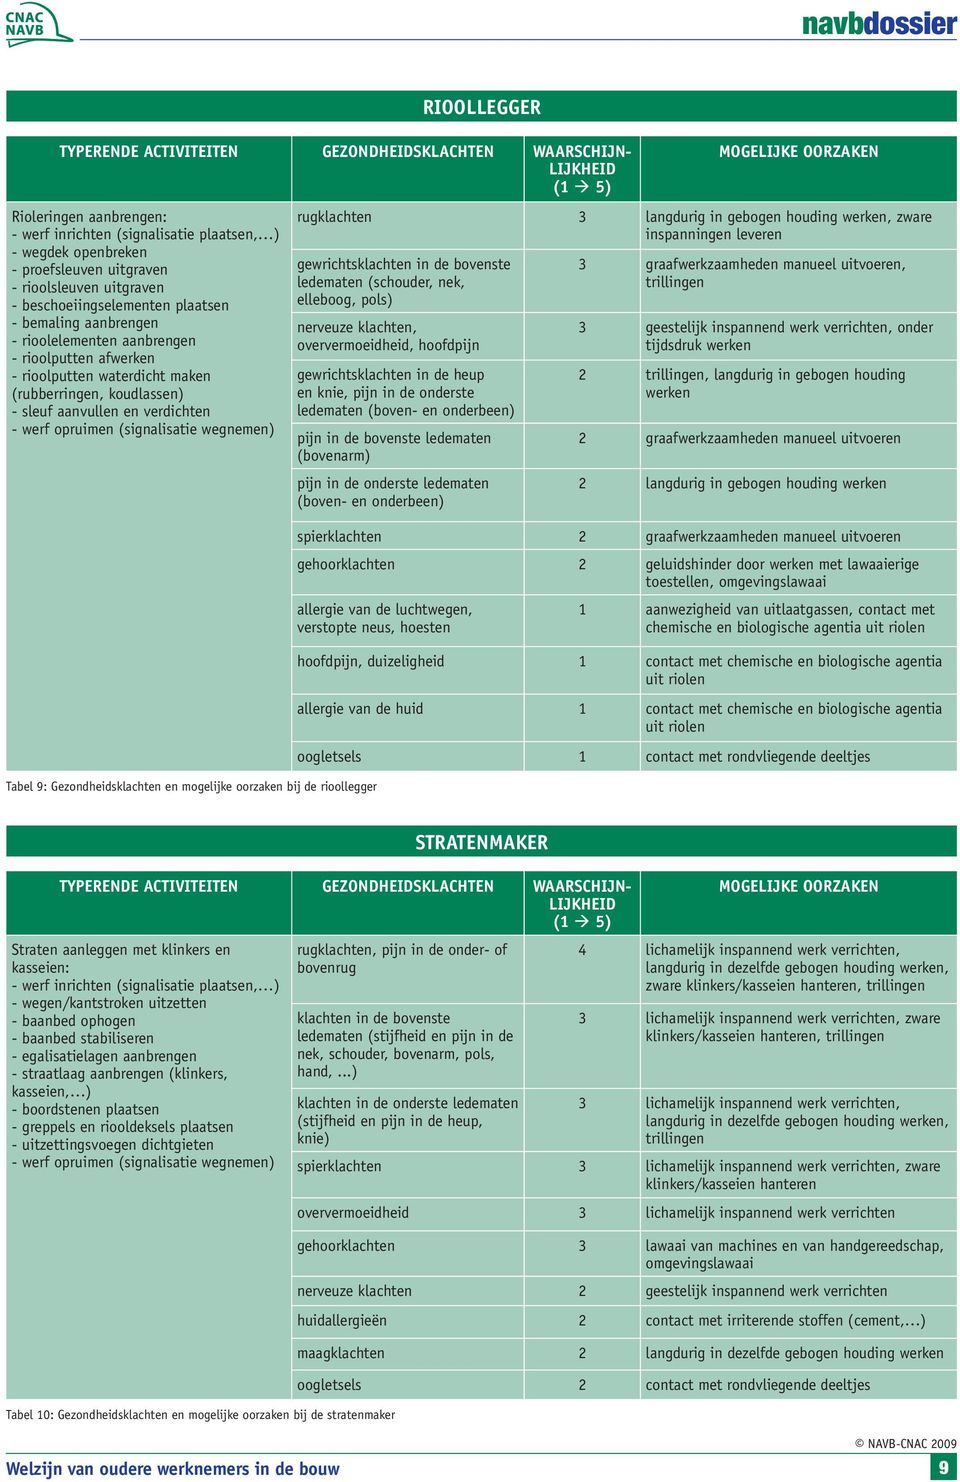 aanvullen en verdichten - werf opruimen (signalisatie wegnemen) Tabel 9: Gezondheidsklachten en mogelijke oorzaken bij de rioollegger MOGELIJKE OORZAKEN rugklachten 3 langdurig in gebogen houding